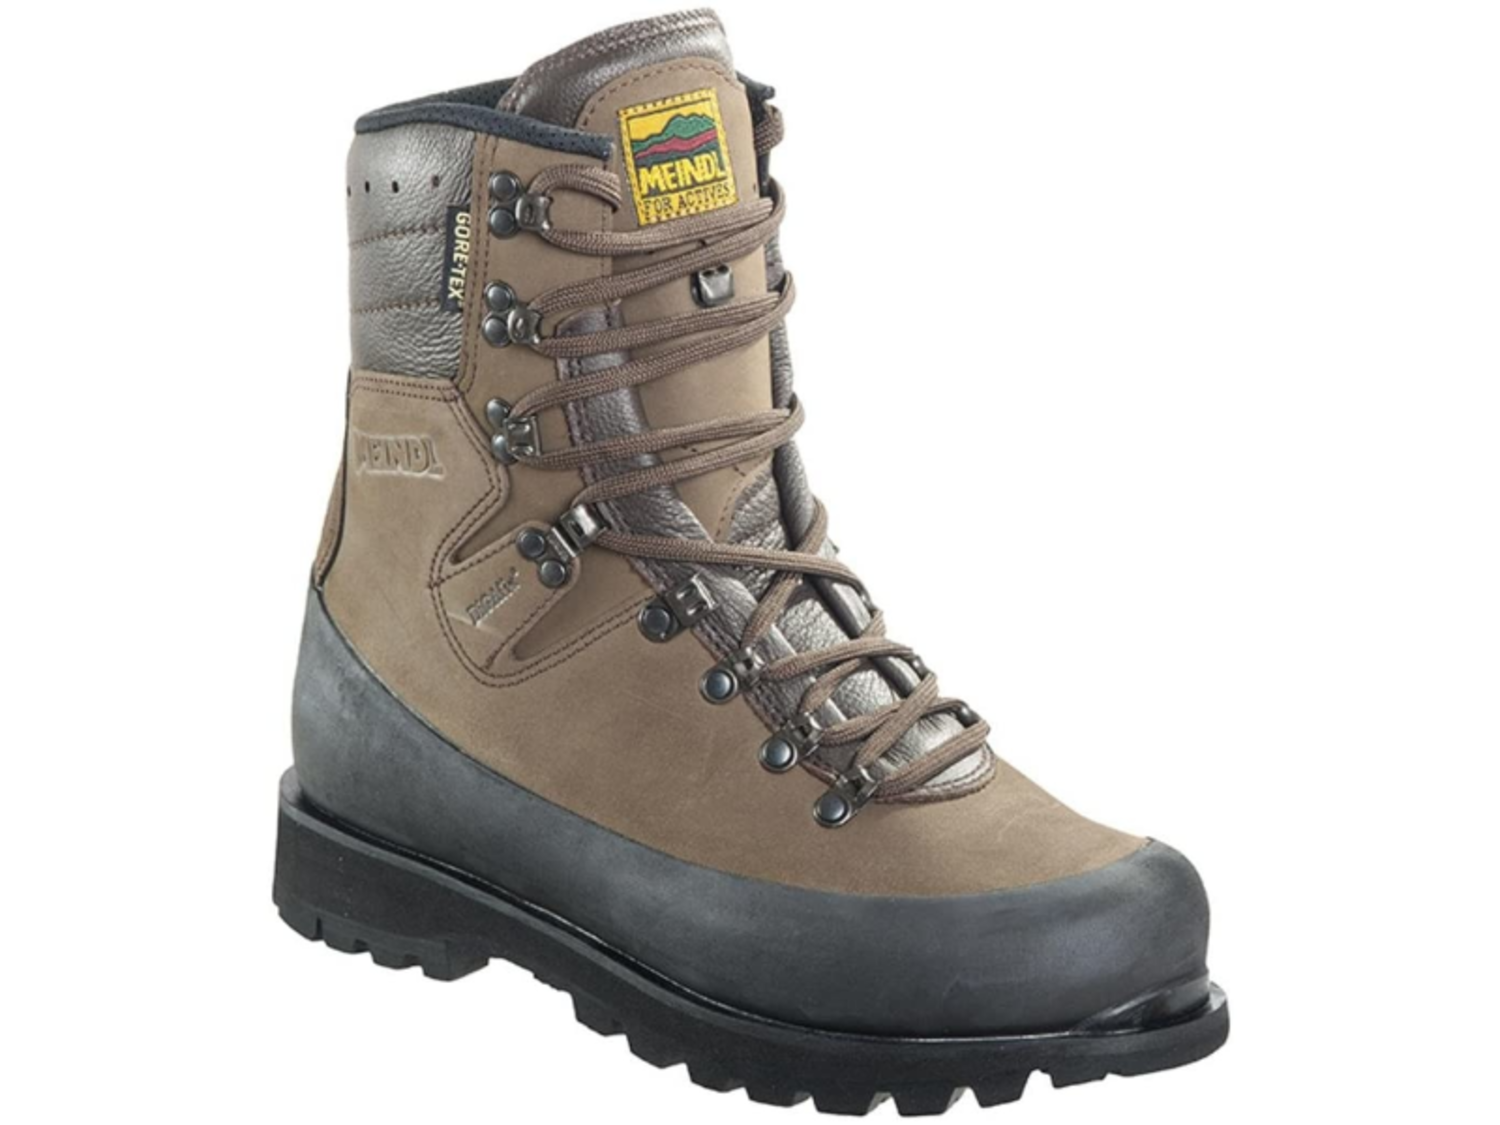 overdracht Oneindigheid Leerling Meindl Glockner GTX Men's Hunting/Mountaineering Boots - Outdoor Essentials